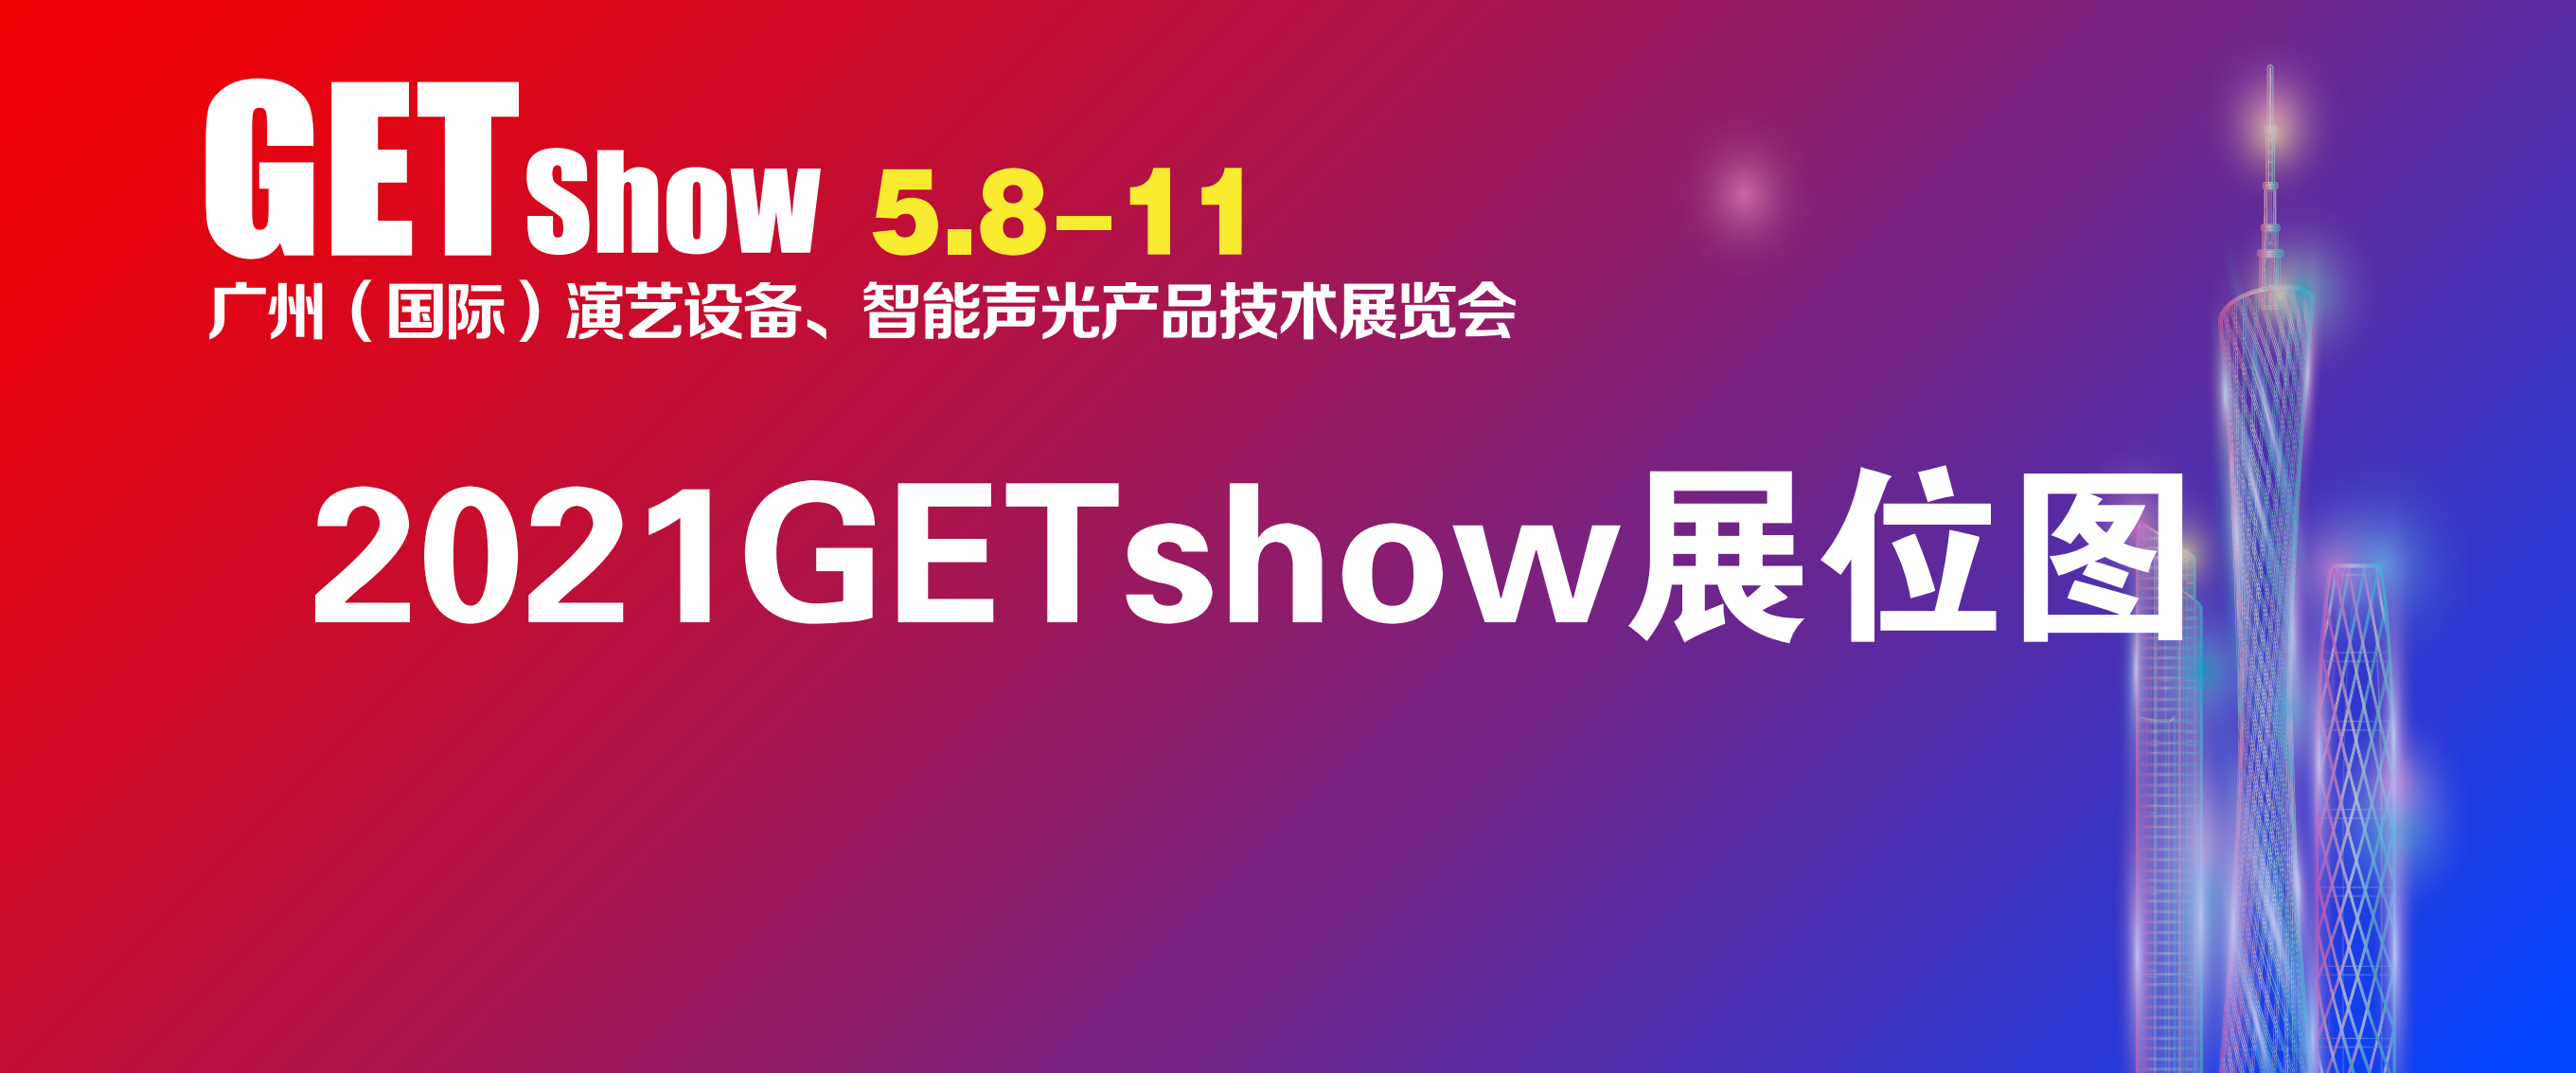 2021GETshow展位图-官网首图_00.png